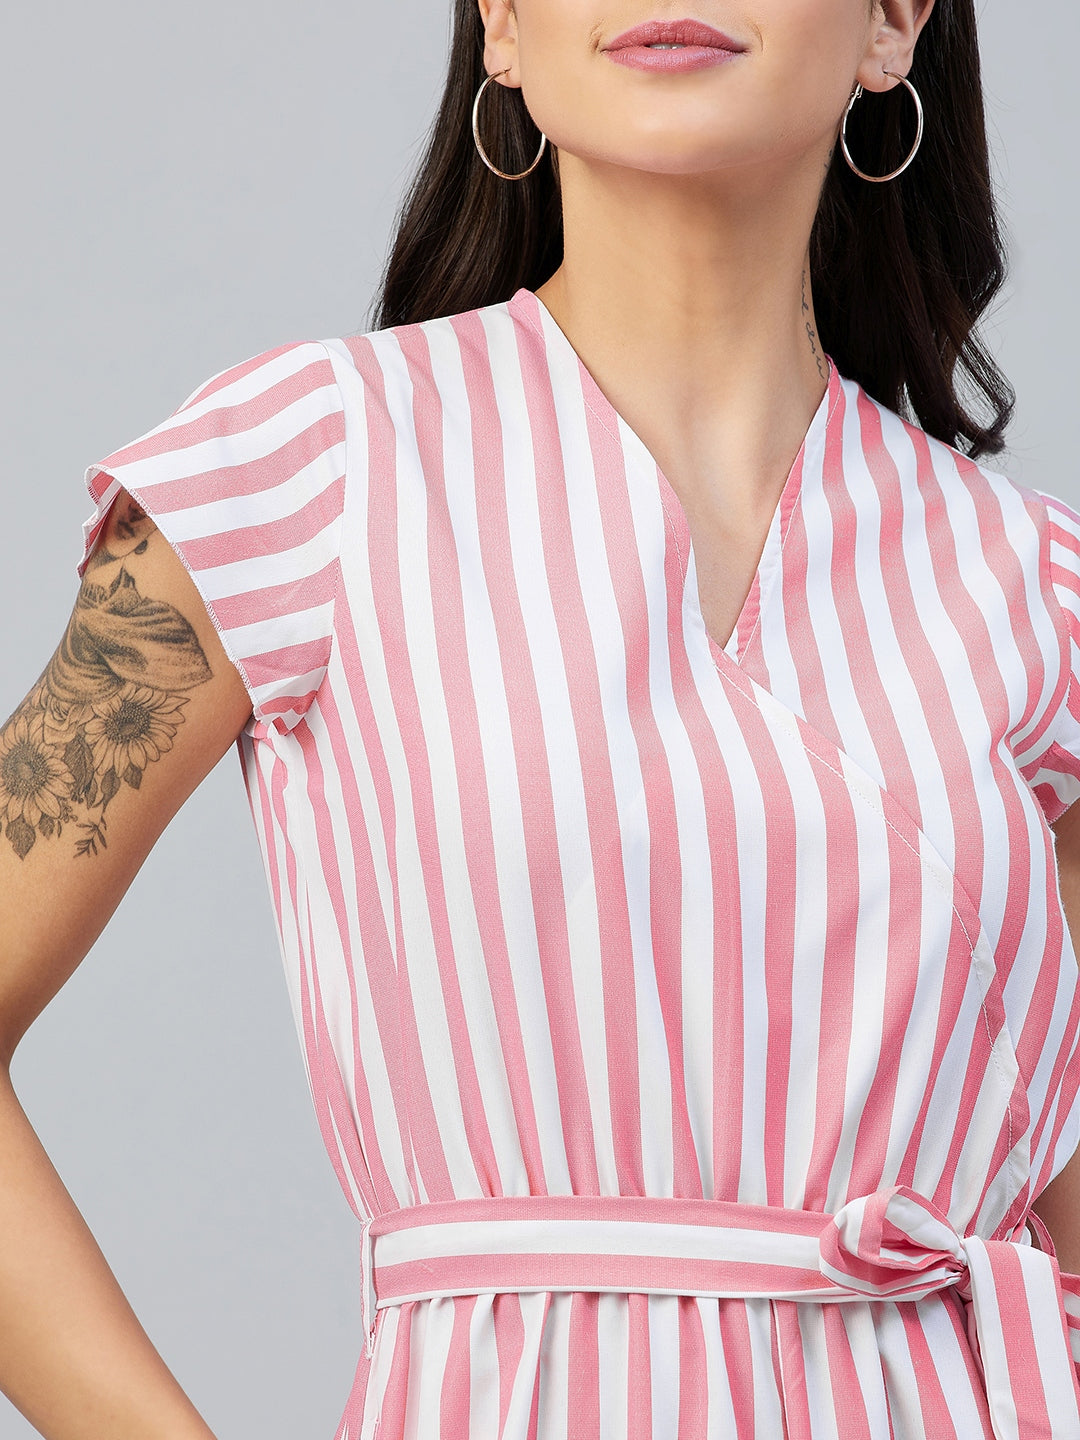 Women's Pink Stripe Wrap Style Jumpsuit